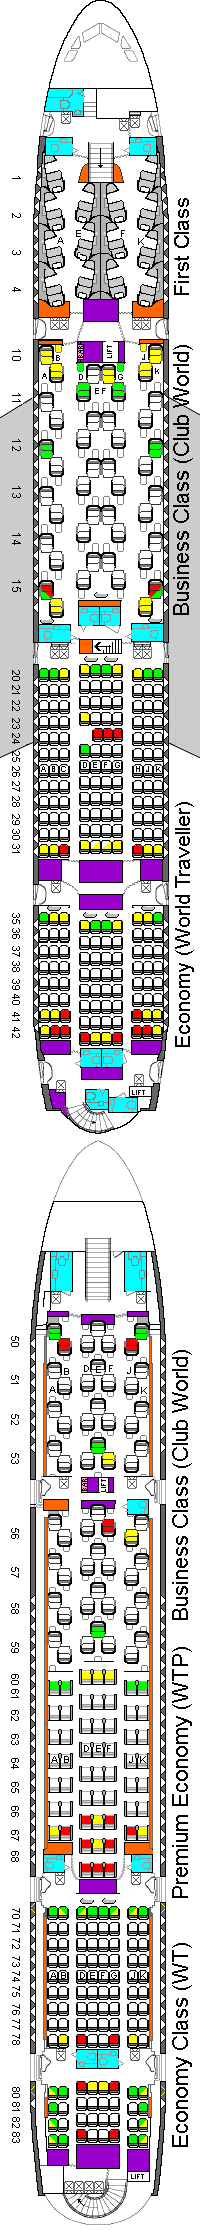 British Airways A380 seating plan